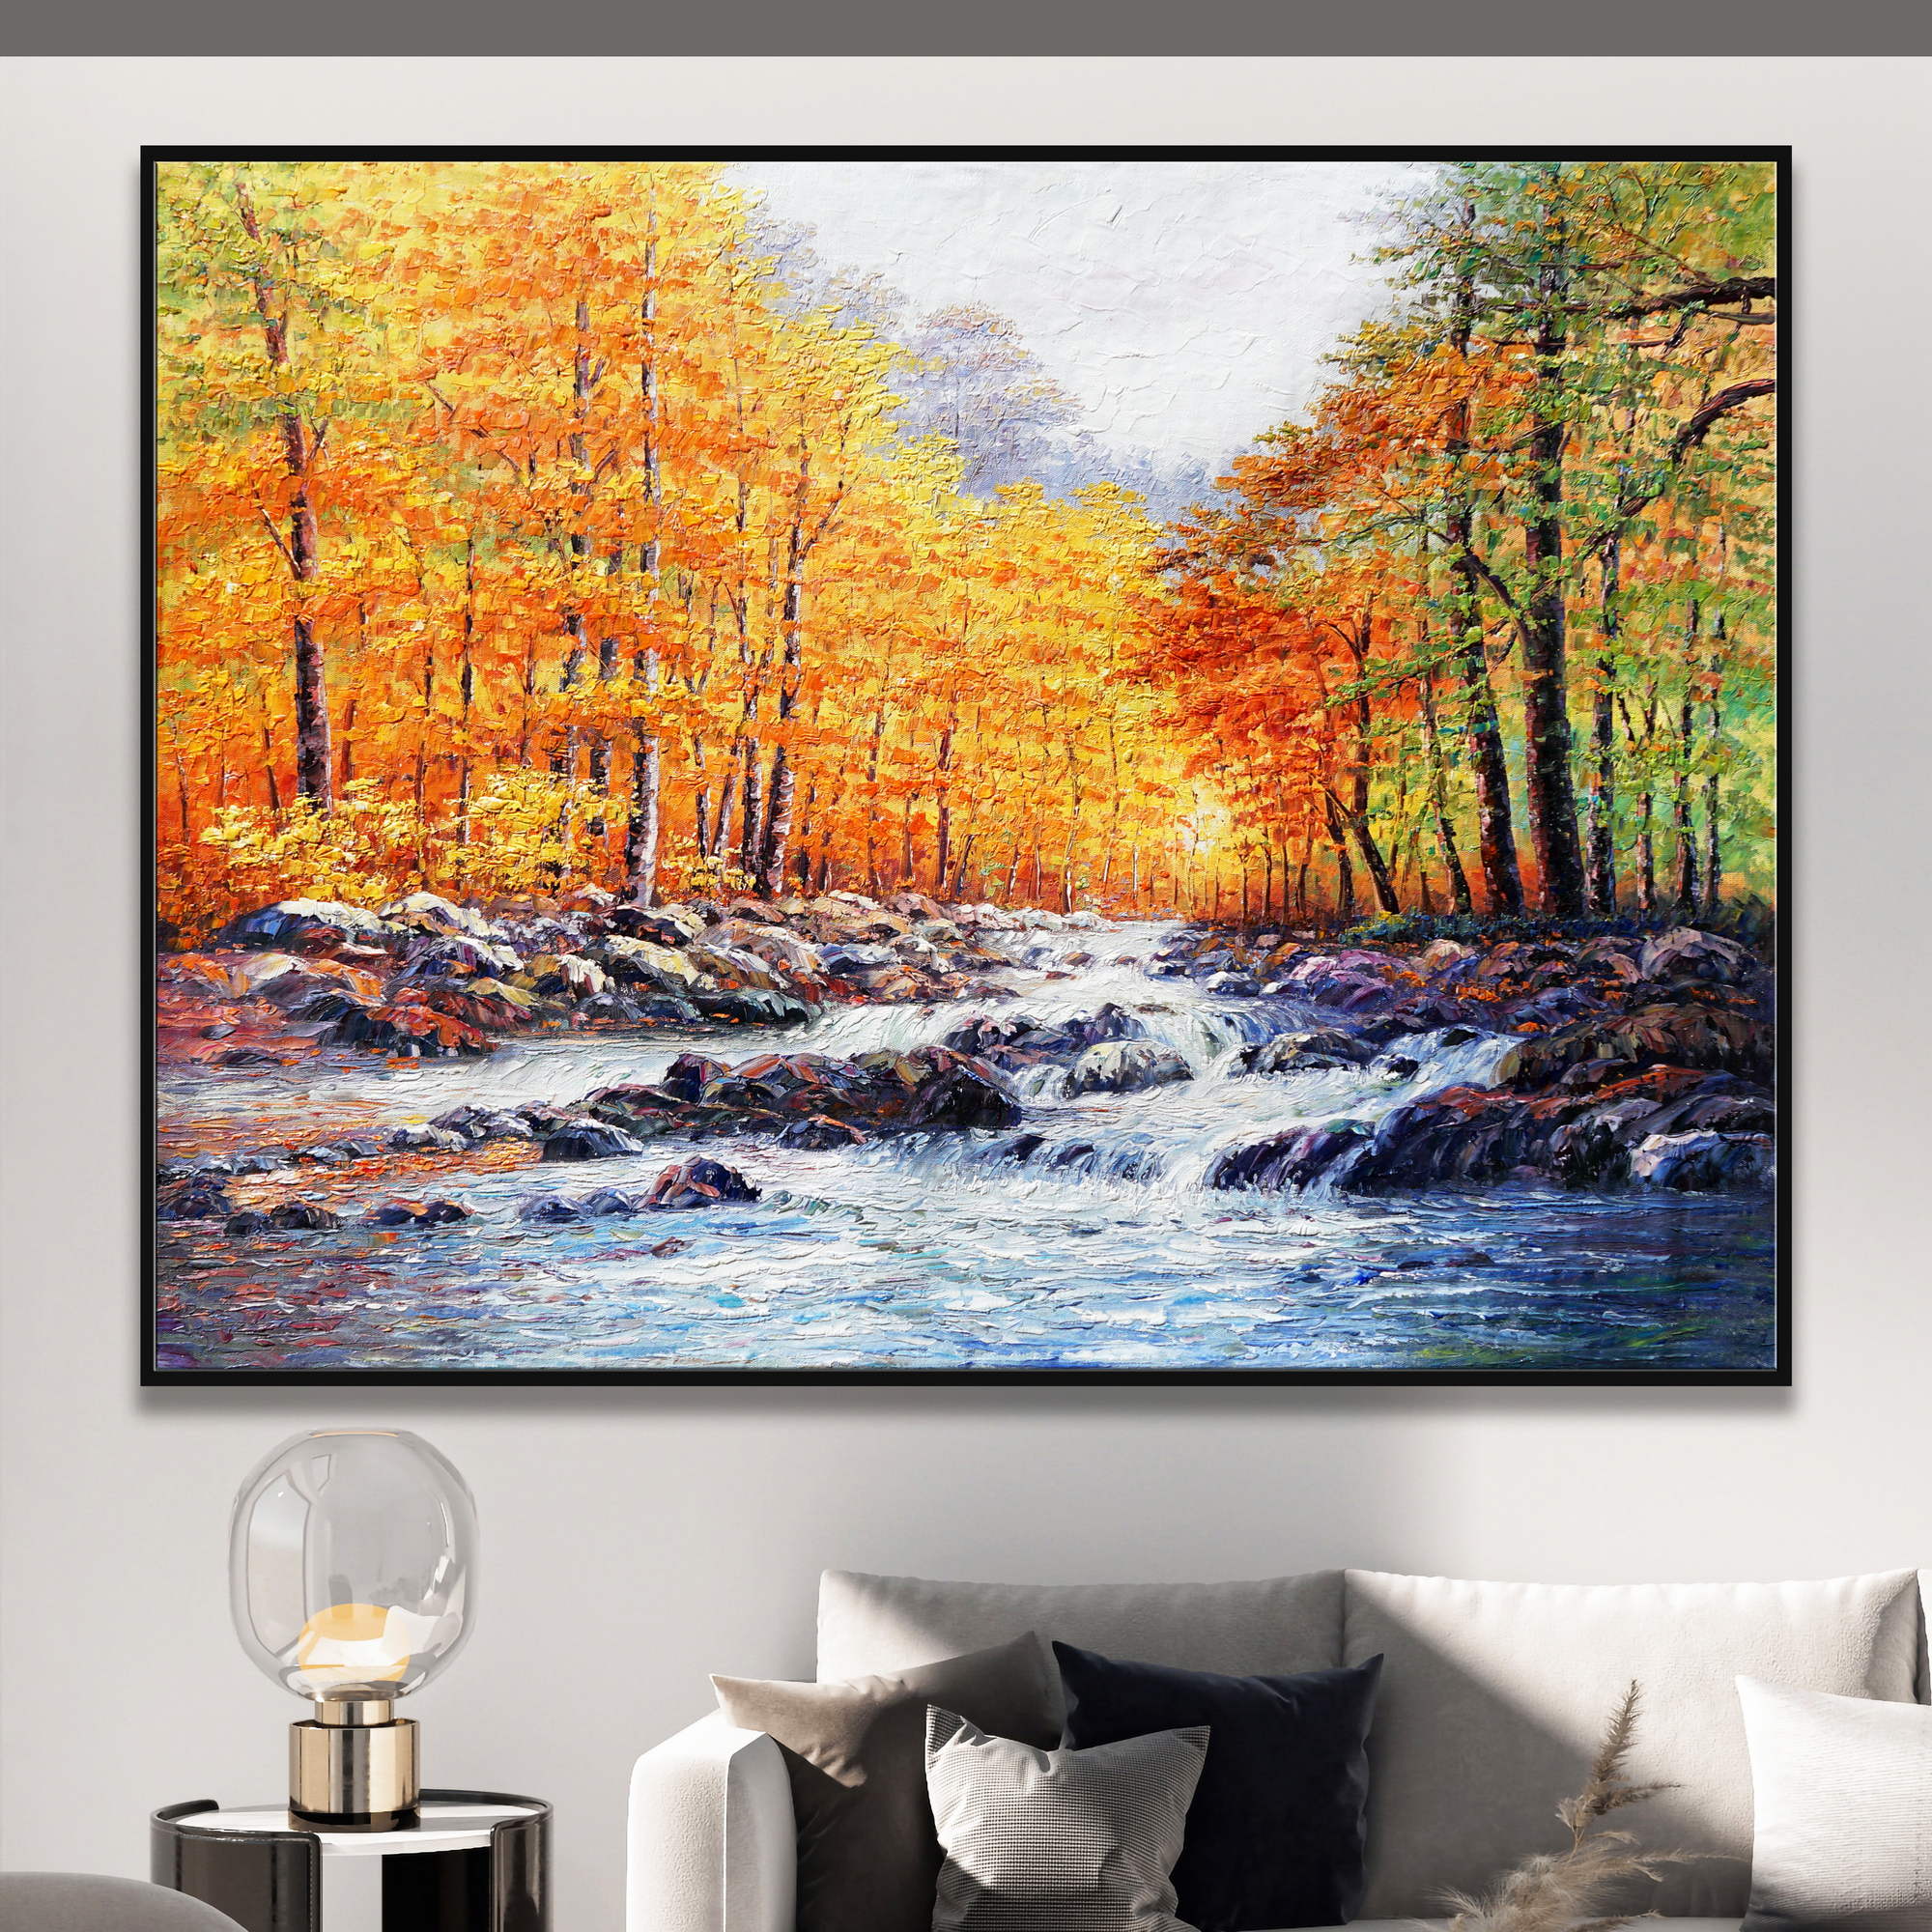 Dipinto di un paesaggio autunnale con fiume, alberi colorati e rocce.